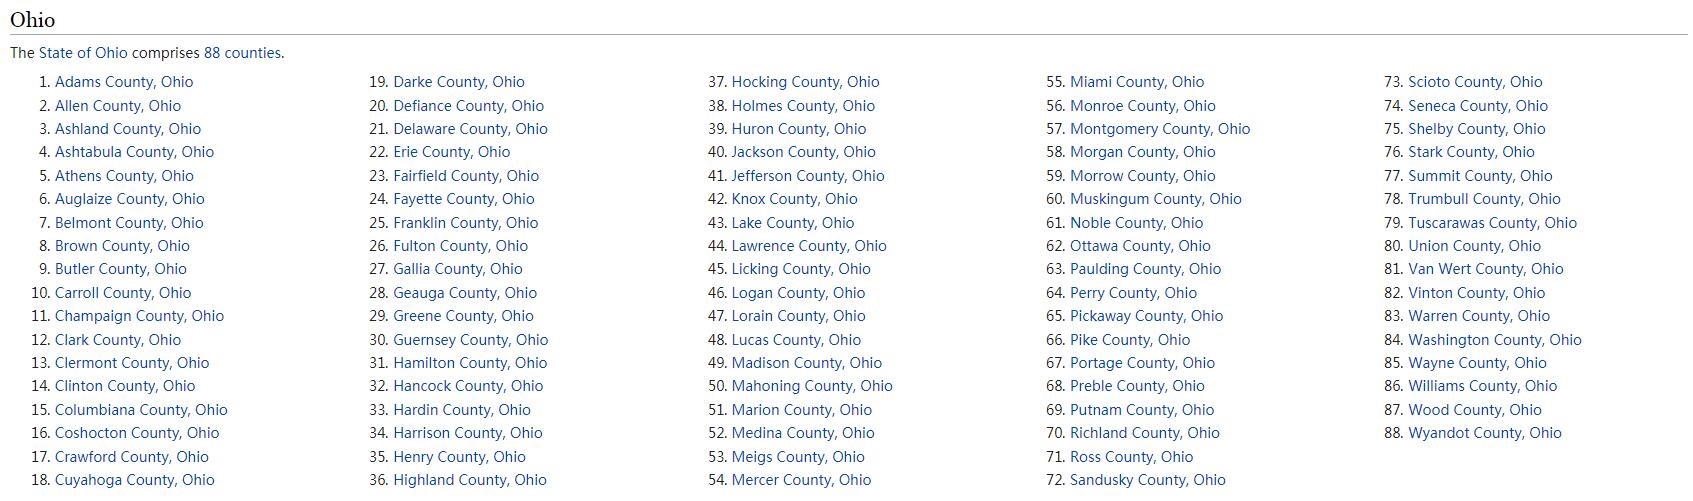 Ohio Counties List